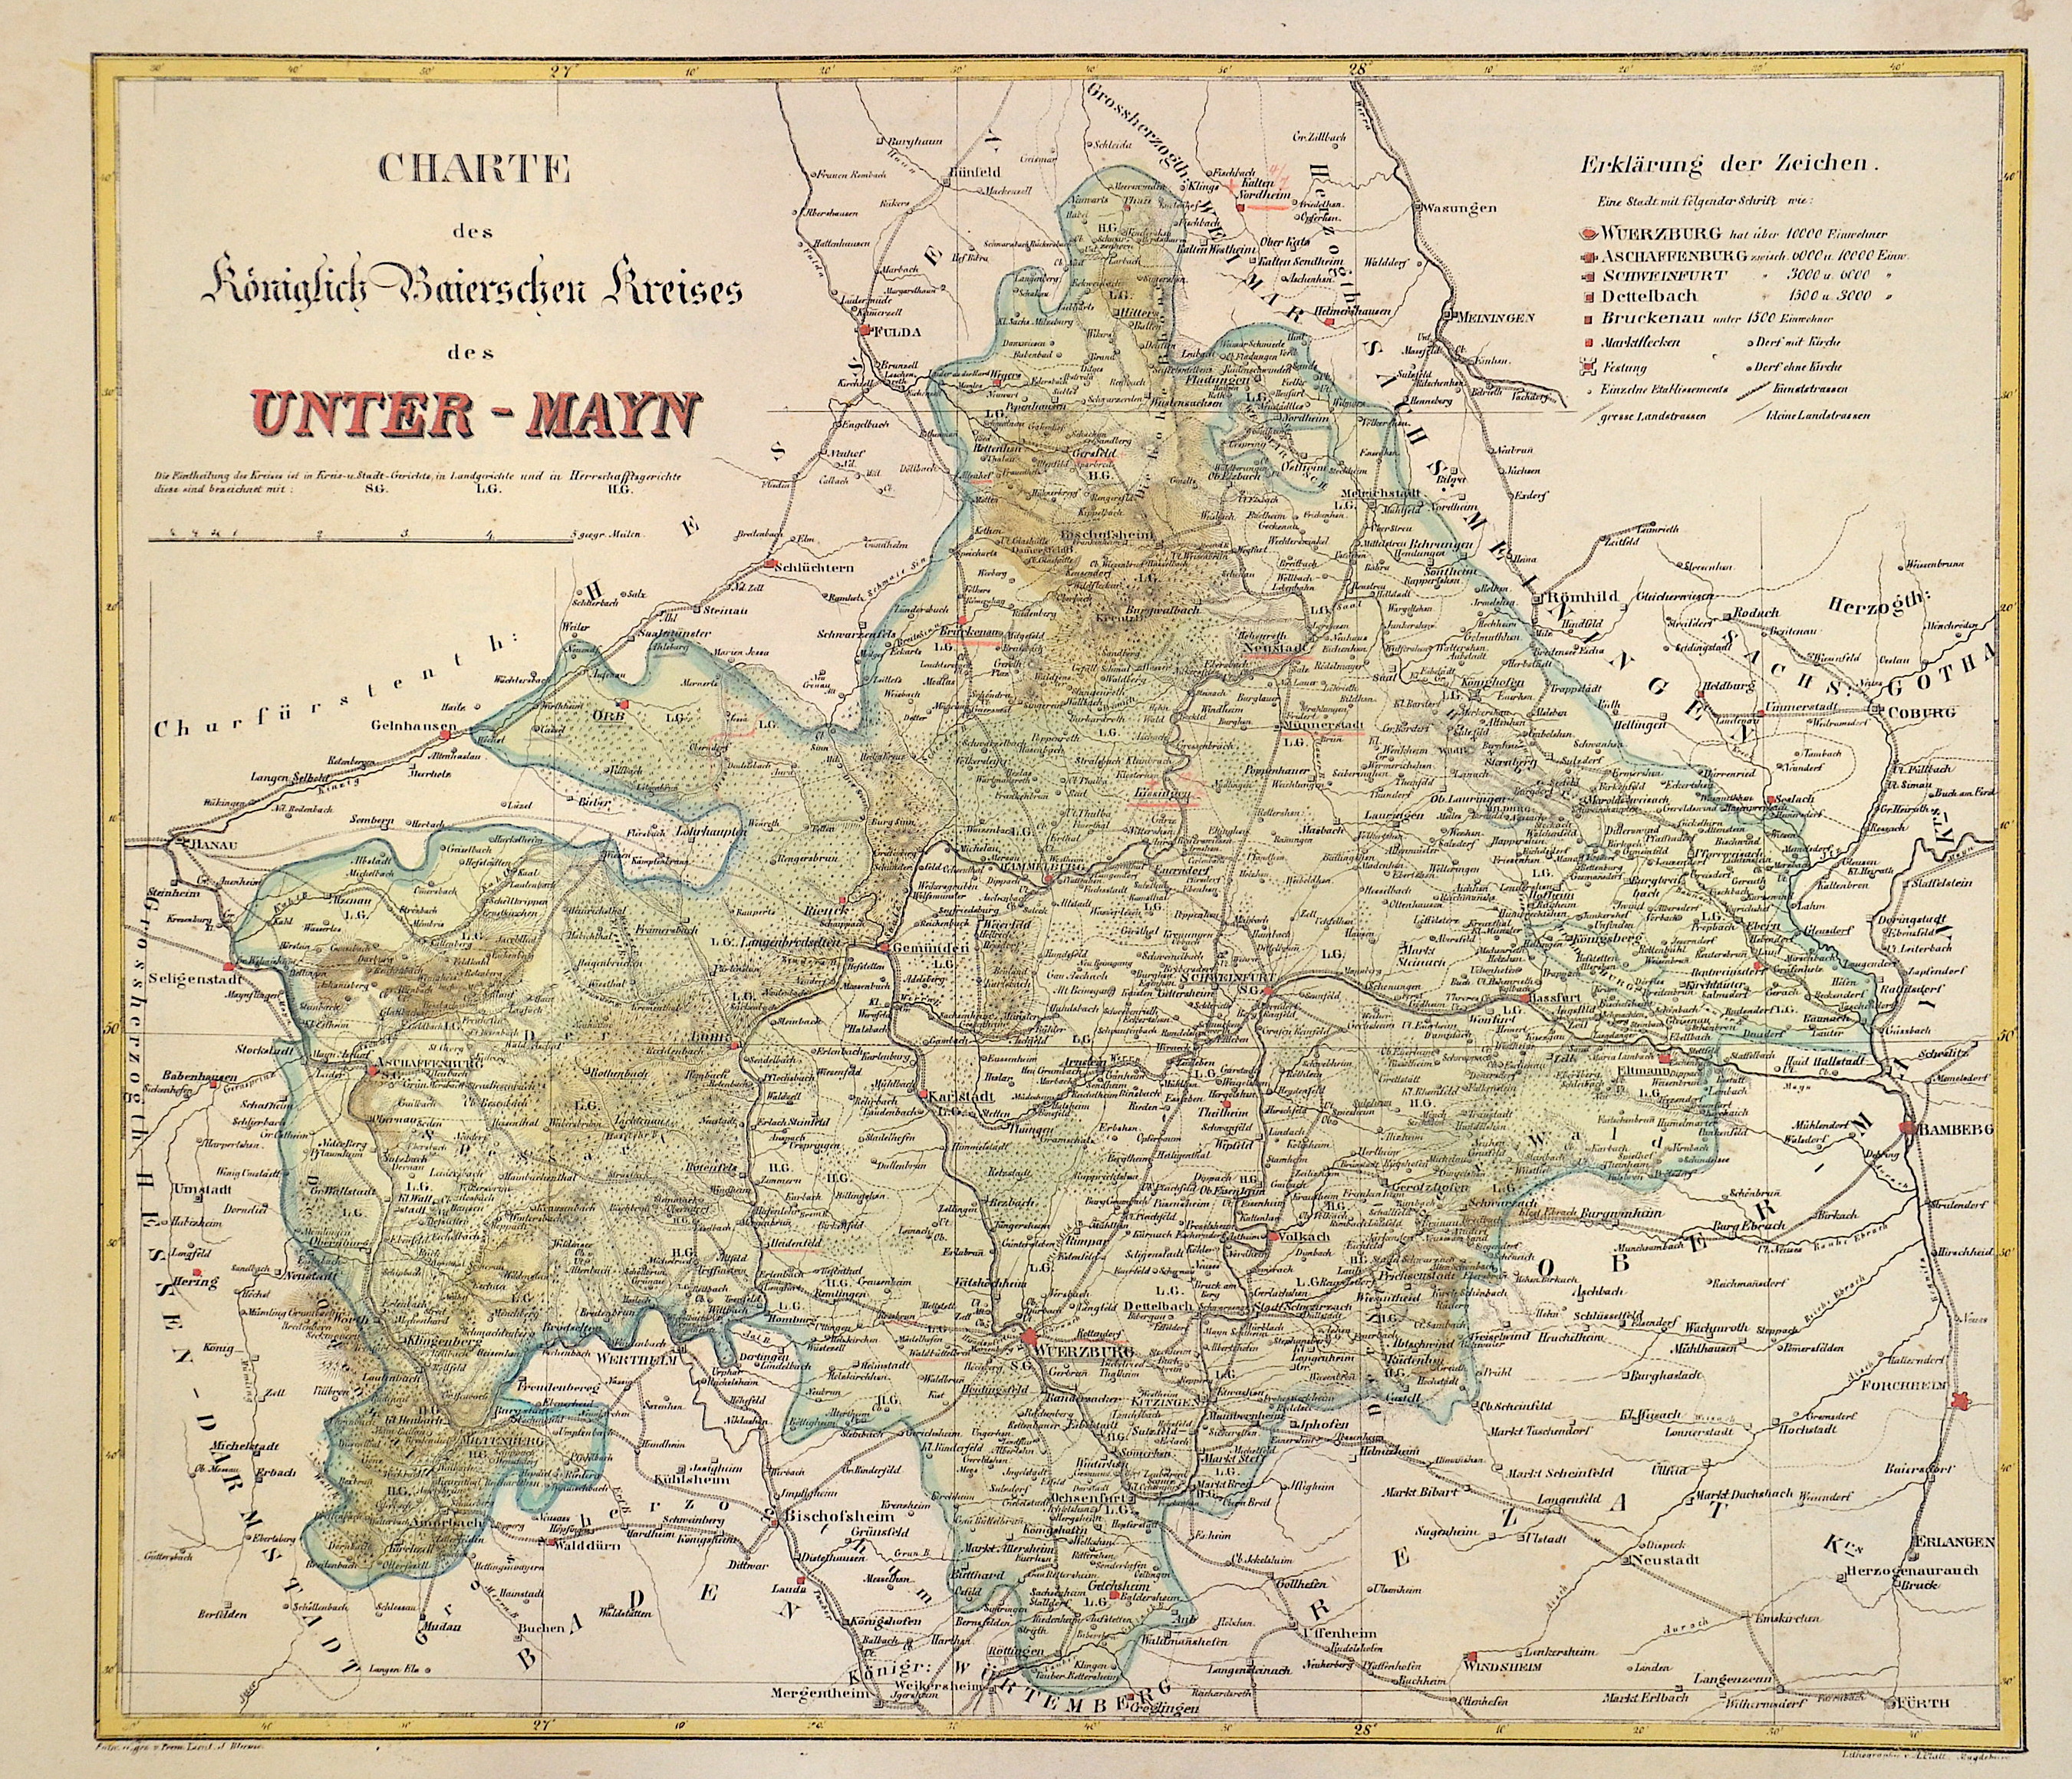 Platt  Charte des Königlich Baierschen Kreises des Unter-Mayn